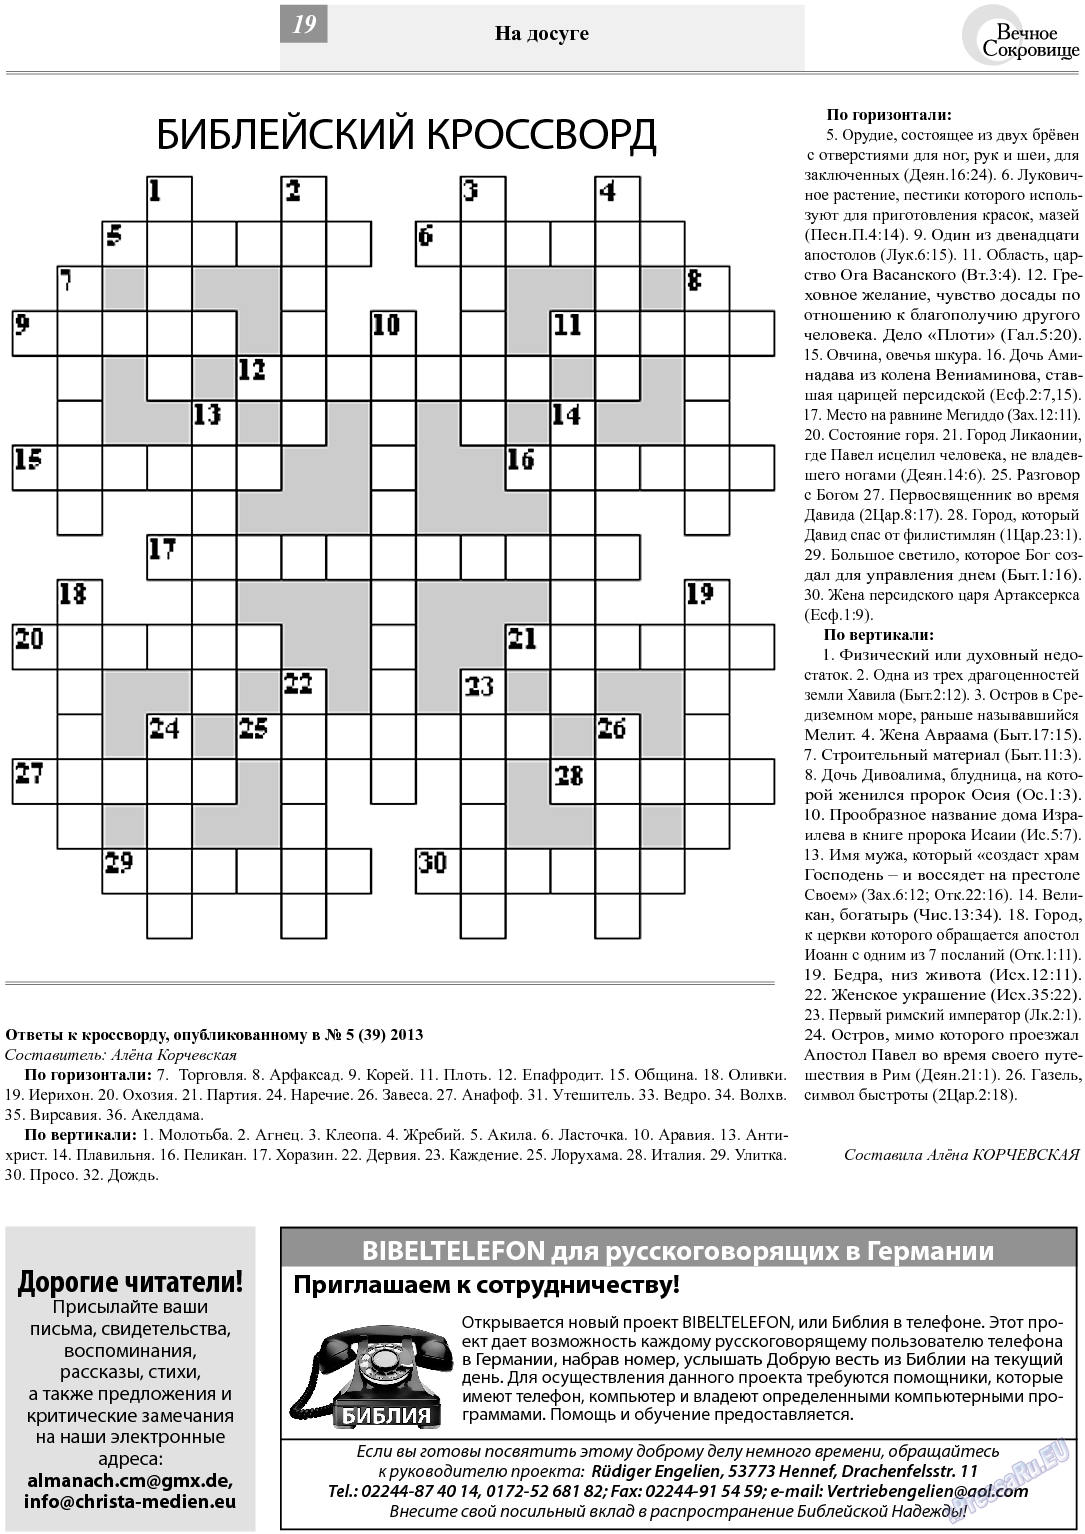 Вечное сокровище, газета. 2013 №6 стр.19